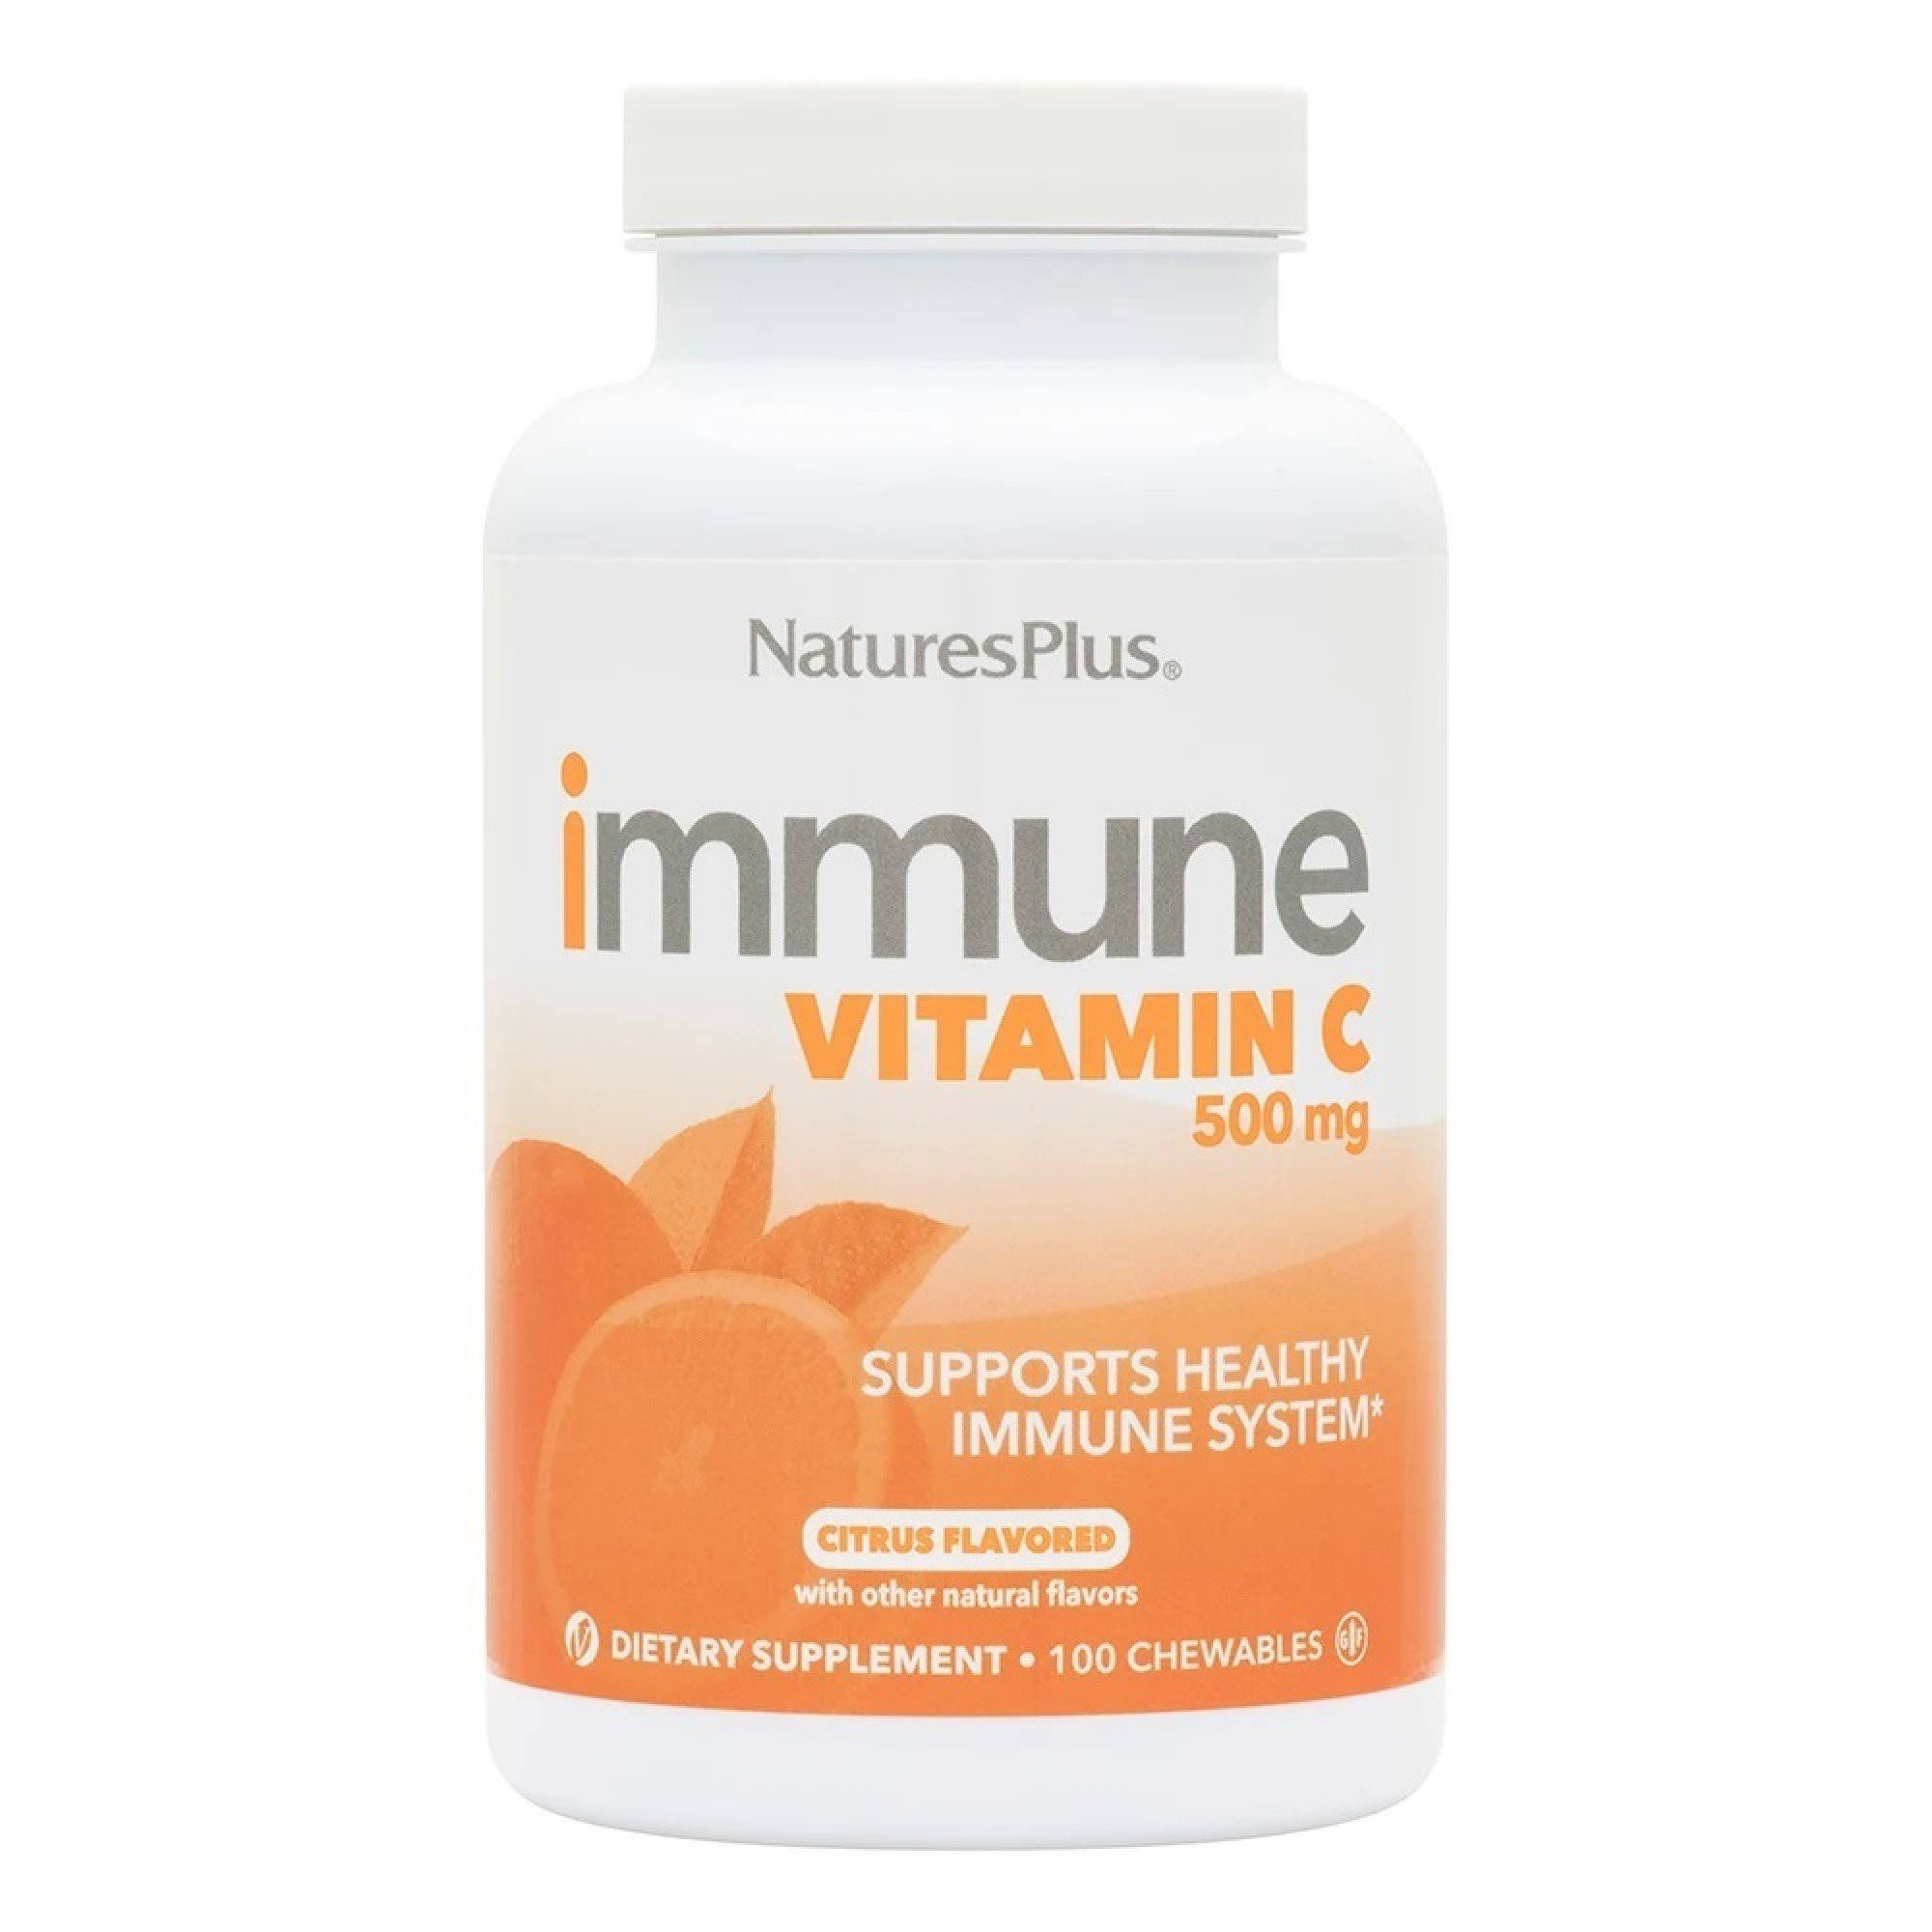 Natures Plus Immune Vitamin C